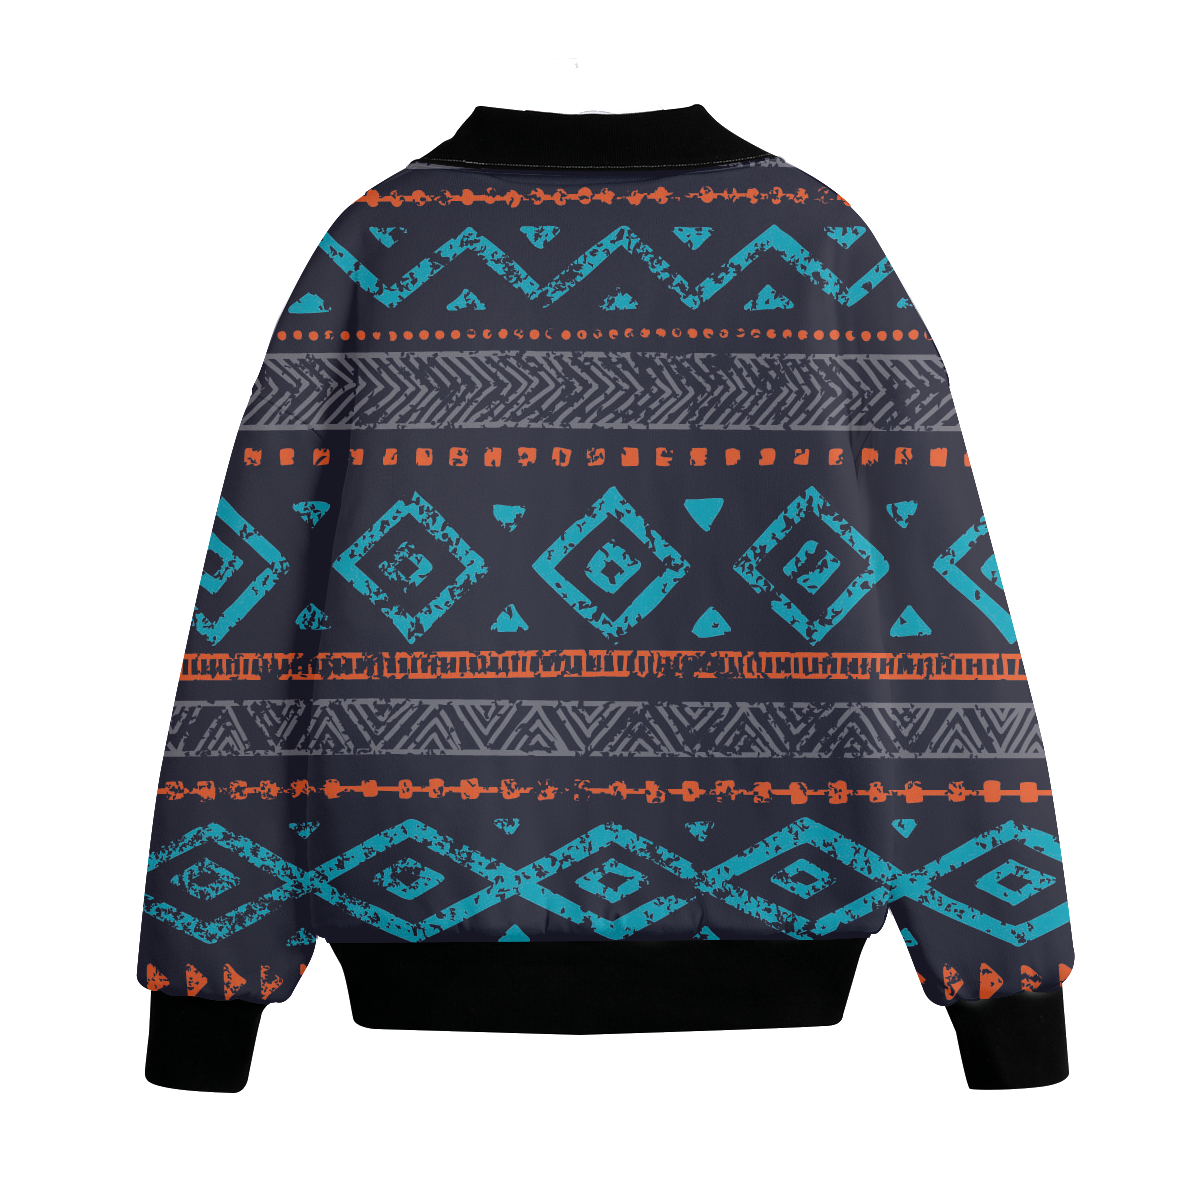 Powwow Storegb nat00598 pattern native american unisex knitted fleece lapel outwear